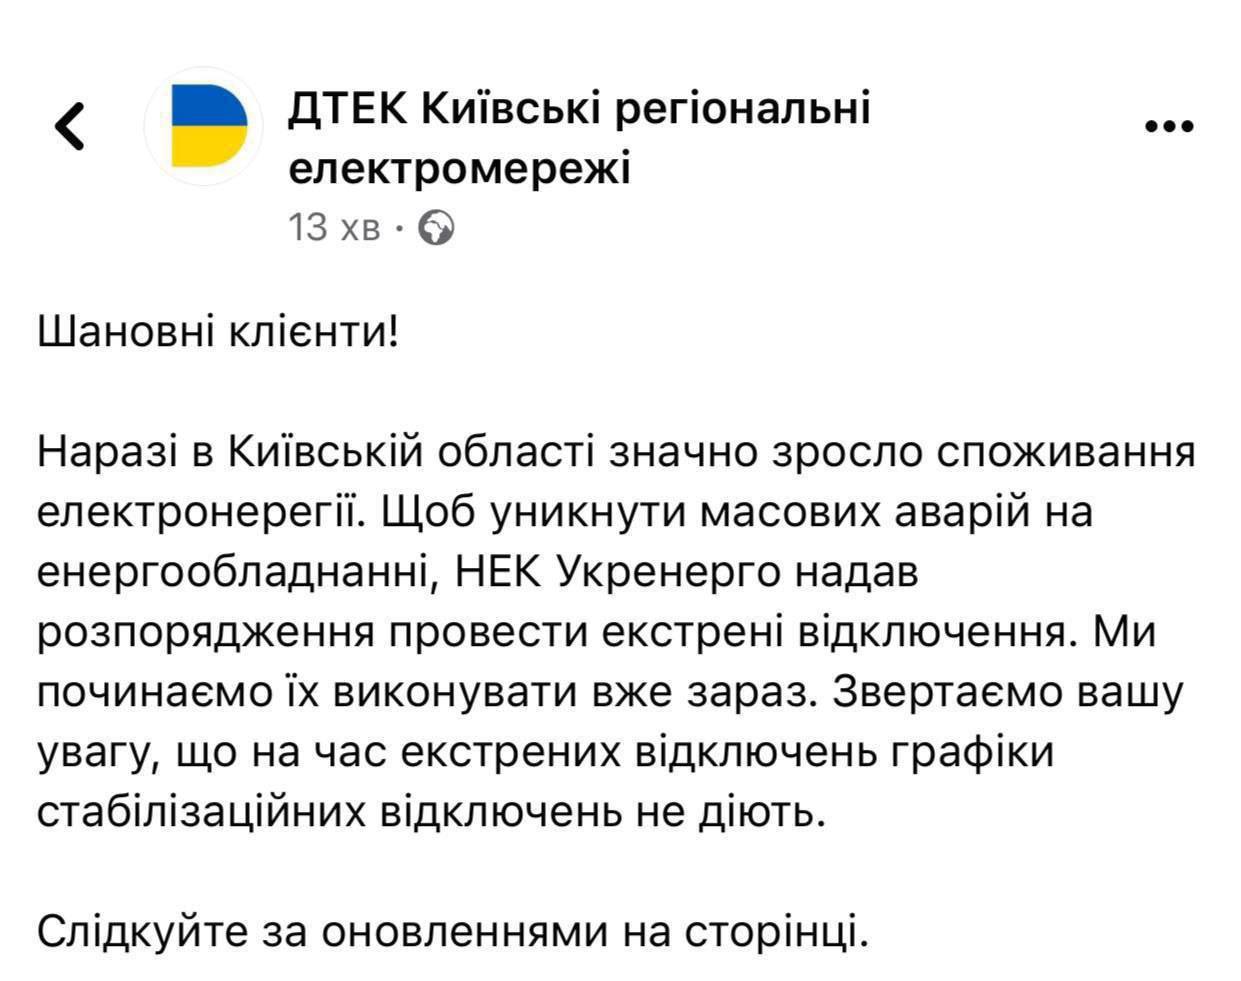 ⚡Через зростання споживання електроенергії на Київщині ДТЕК розпочинає екстрені відключення 